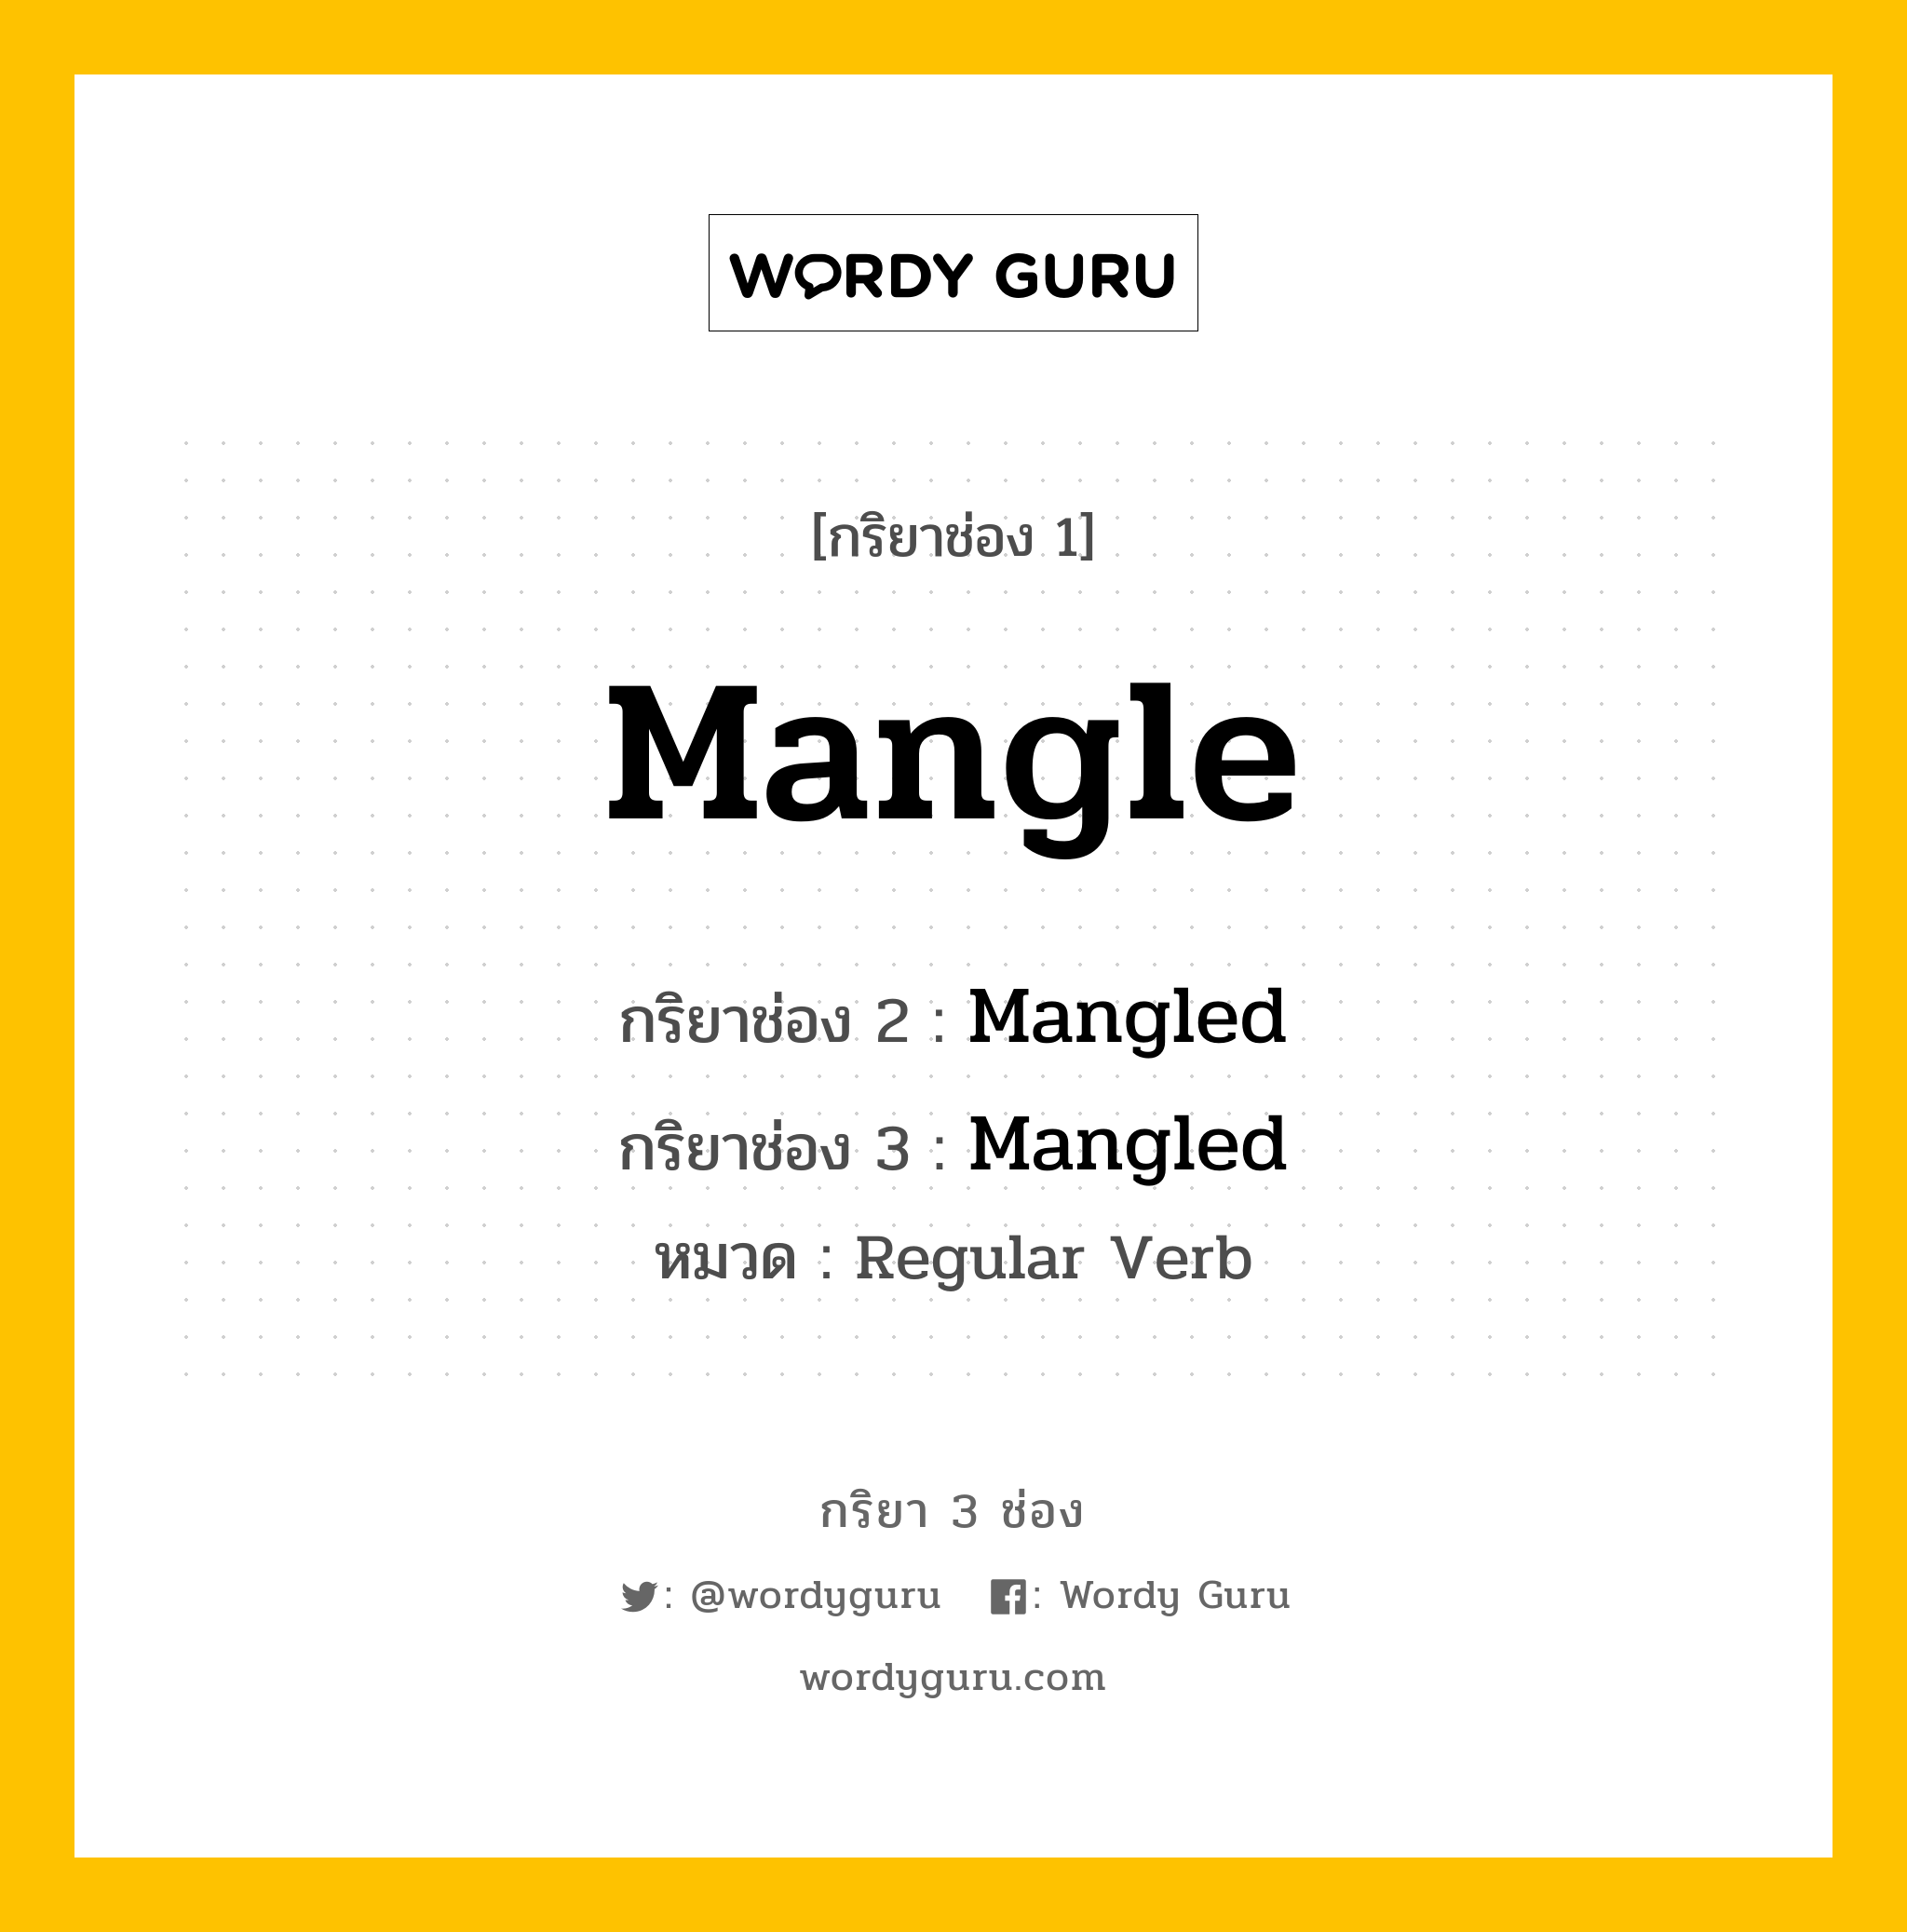 กริยา 3 ช่อง: Mangle ช่อง 2 Mangle ช่อง 3 คืออะไร, กริยาช่อง 1 Mangle กริยาช่อง 2 Mangled กริยาช่อง 3 Mangled หมวด Regular Verb หมวด Regular Verb